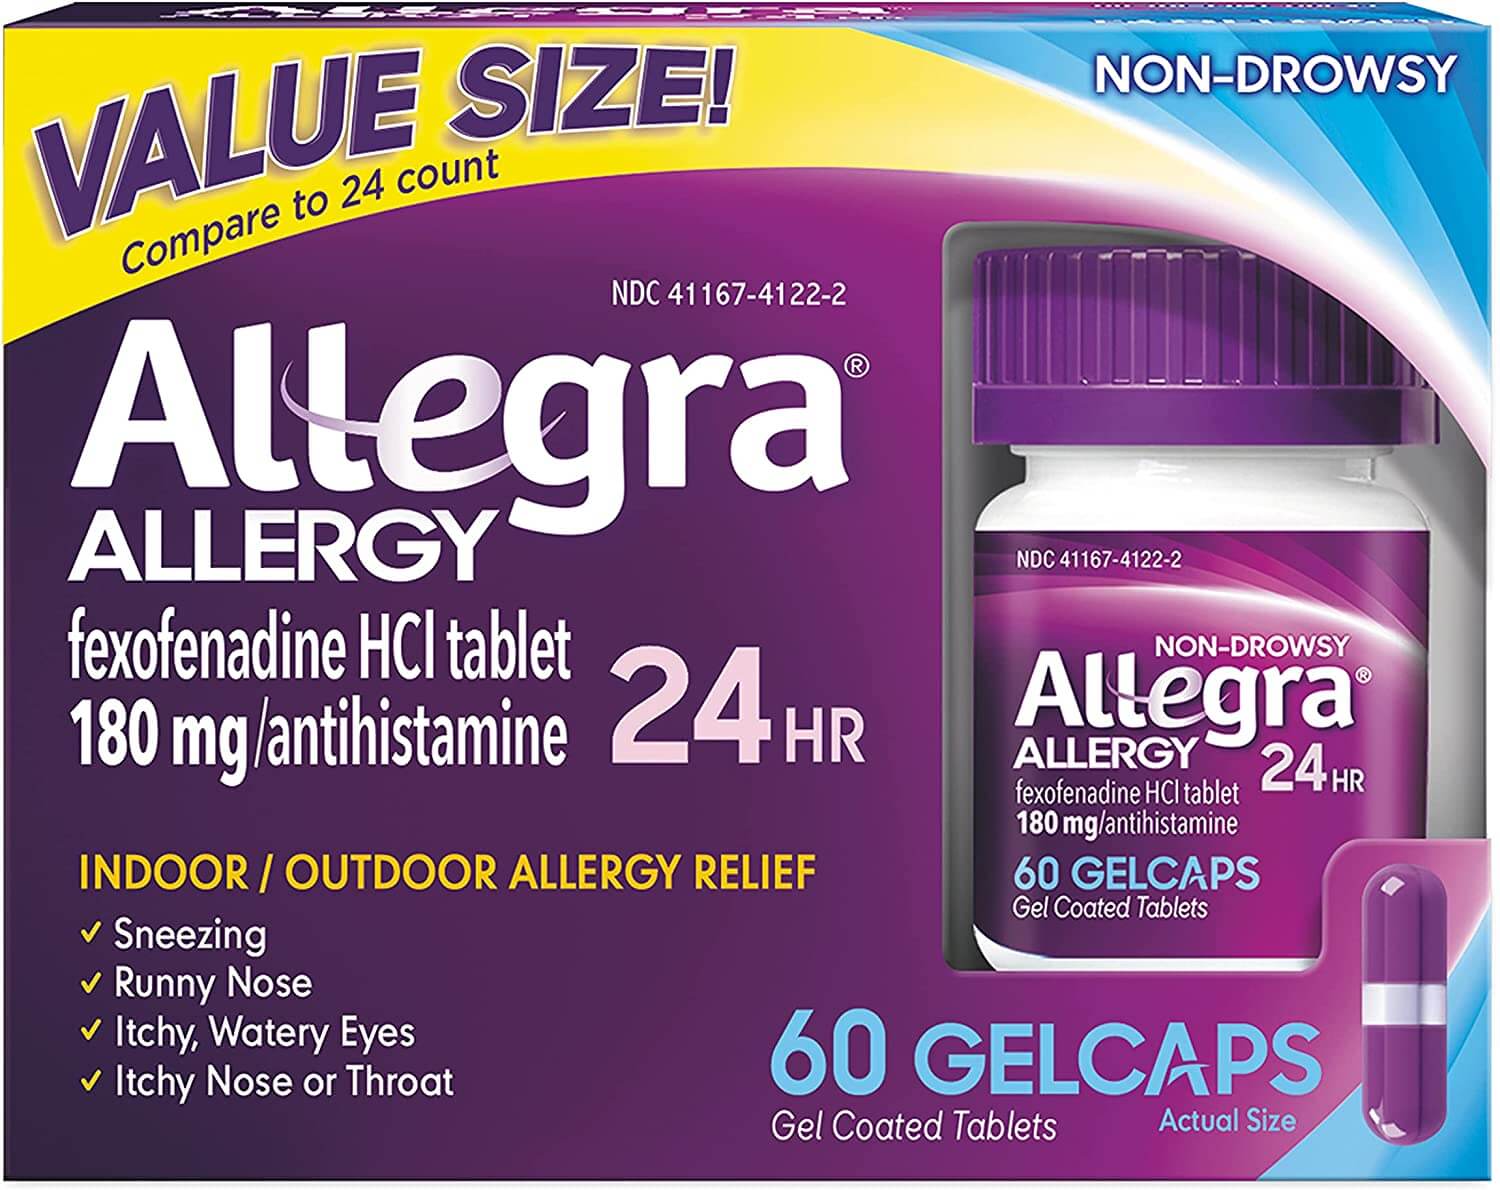 Allegra allergy medicine